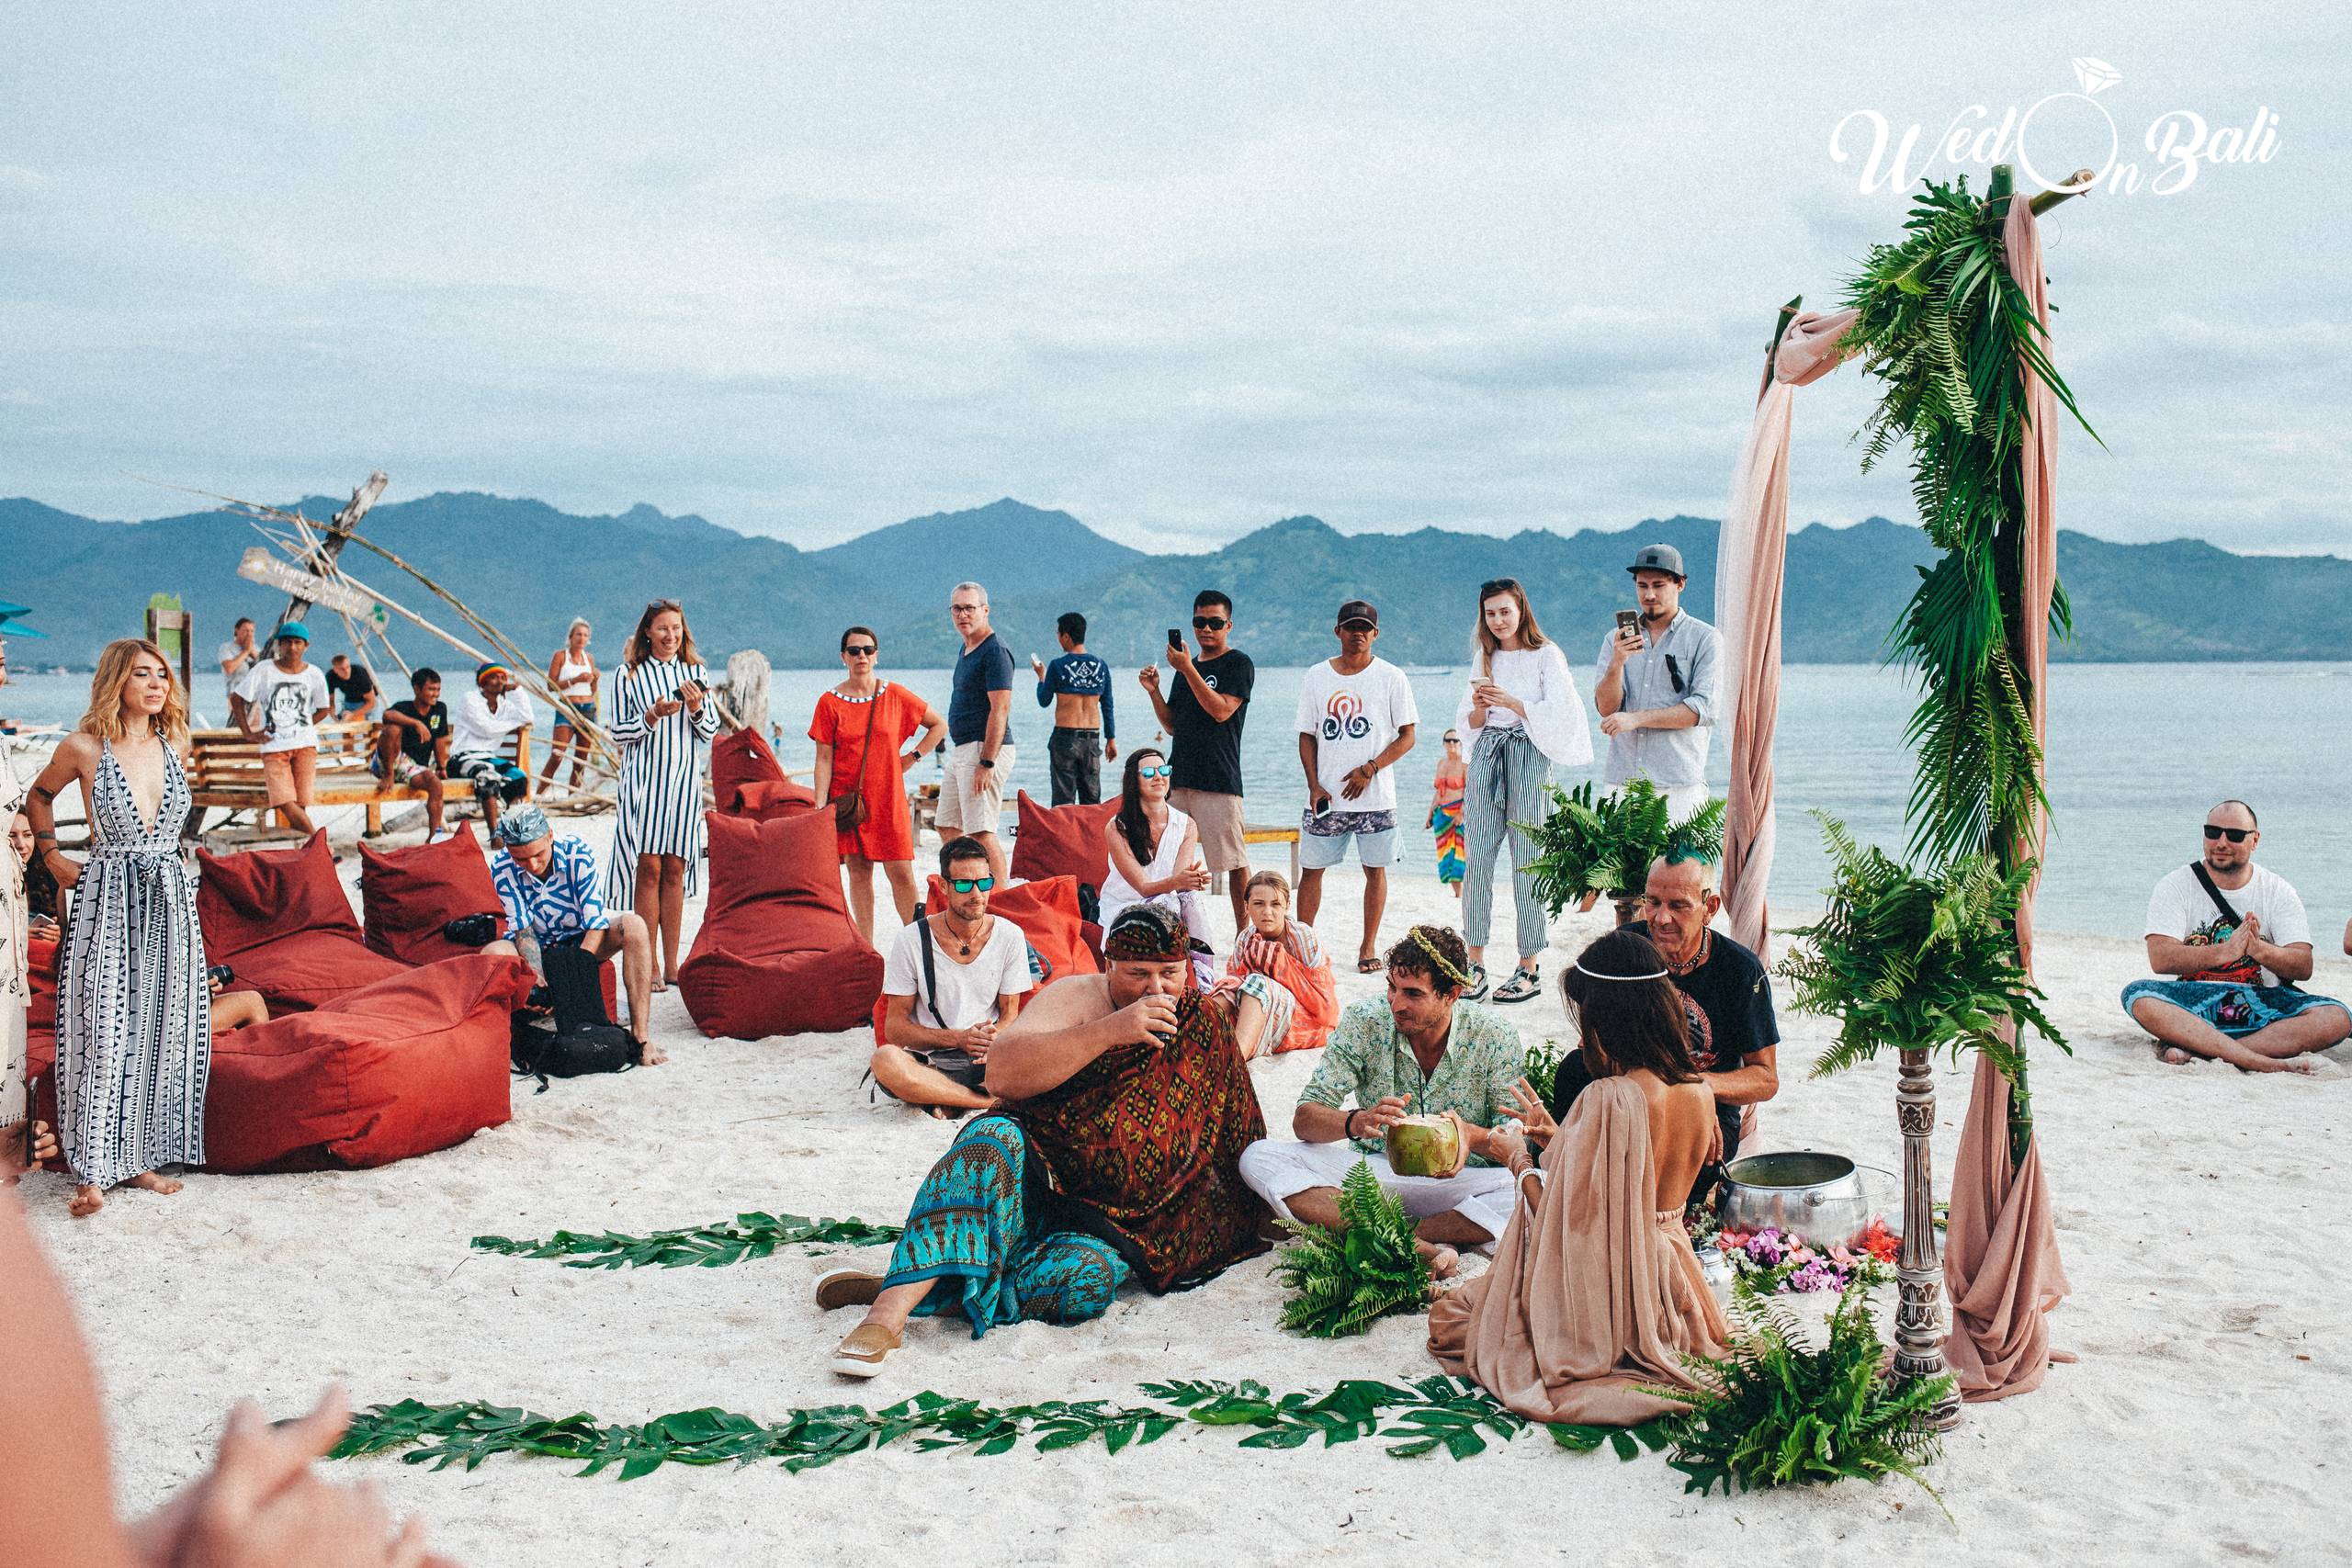 Свадебная церемония на бали: как организовать свадьбу мечты | wedding magazine